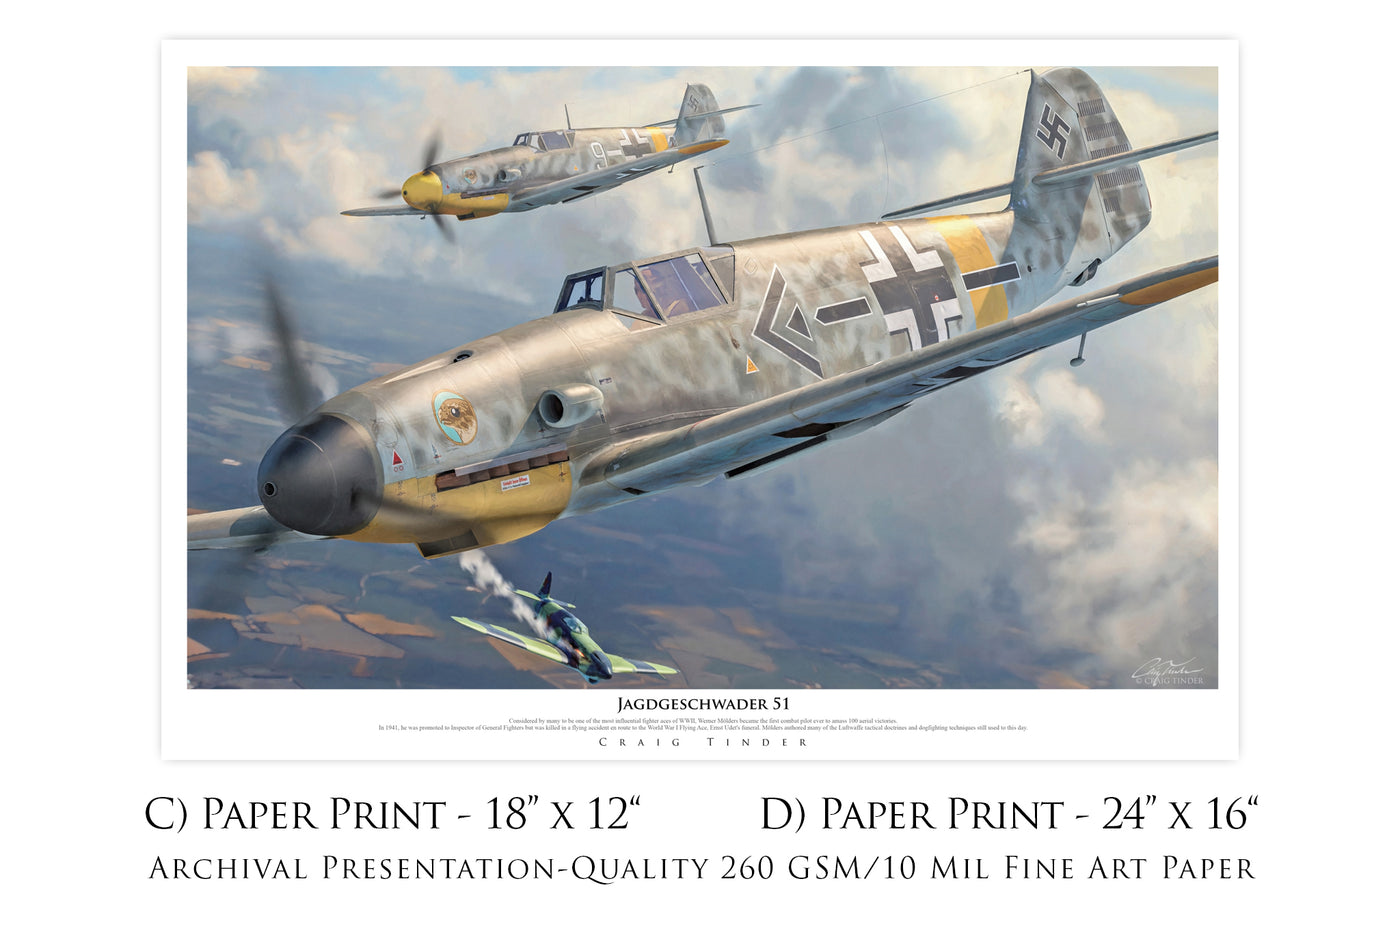 Jagdgeschwader 51 - Messerschmitt Bf 109 Aviation Art-Art Print-Aces In Action: The Workshop of Artist Craig Tinder